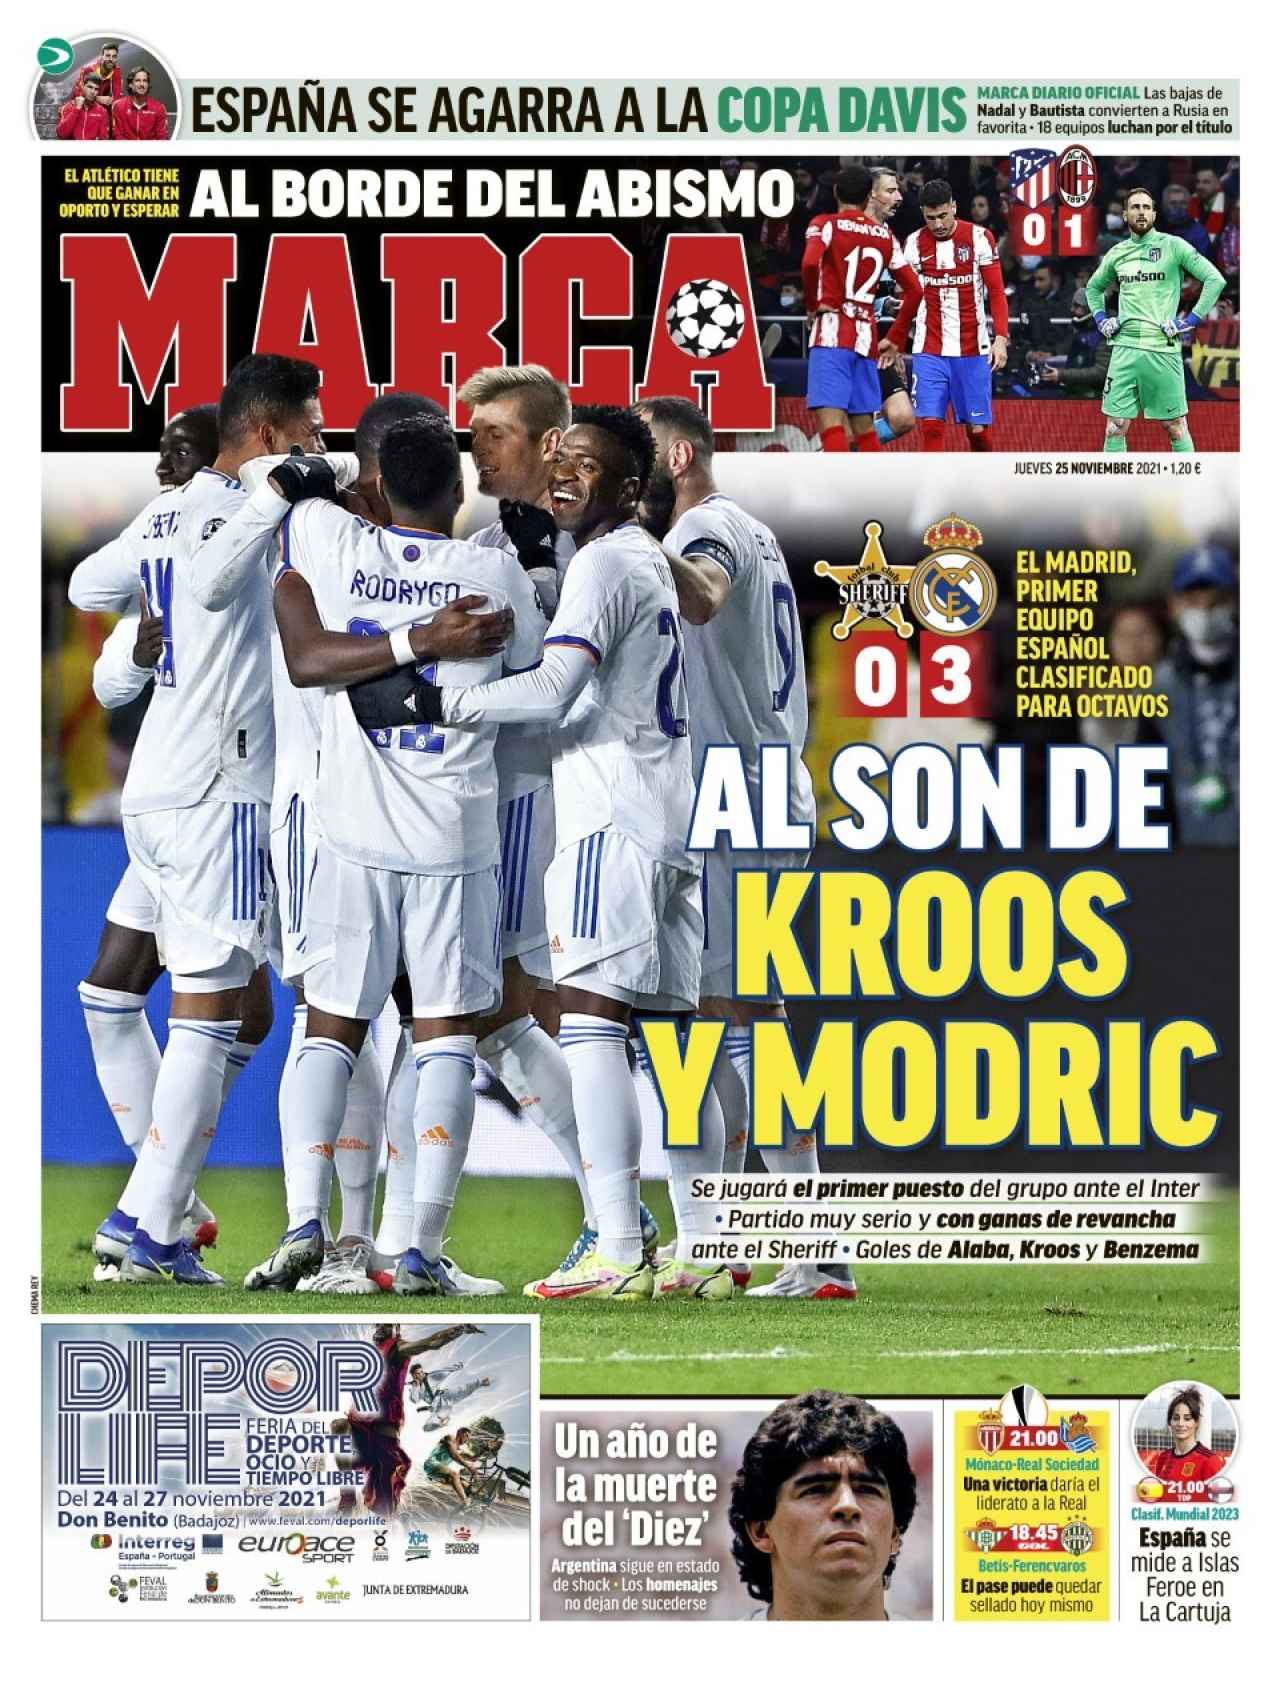 La portada del diario MARCA (25/11/2021)